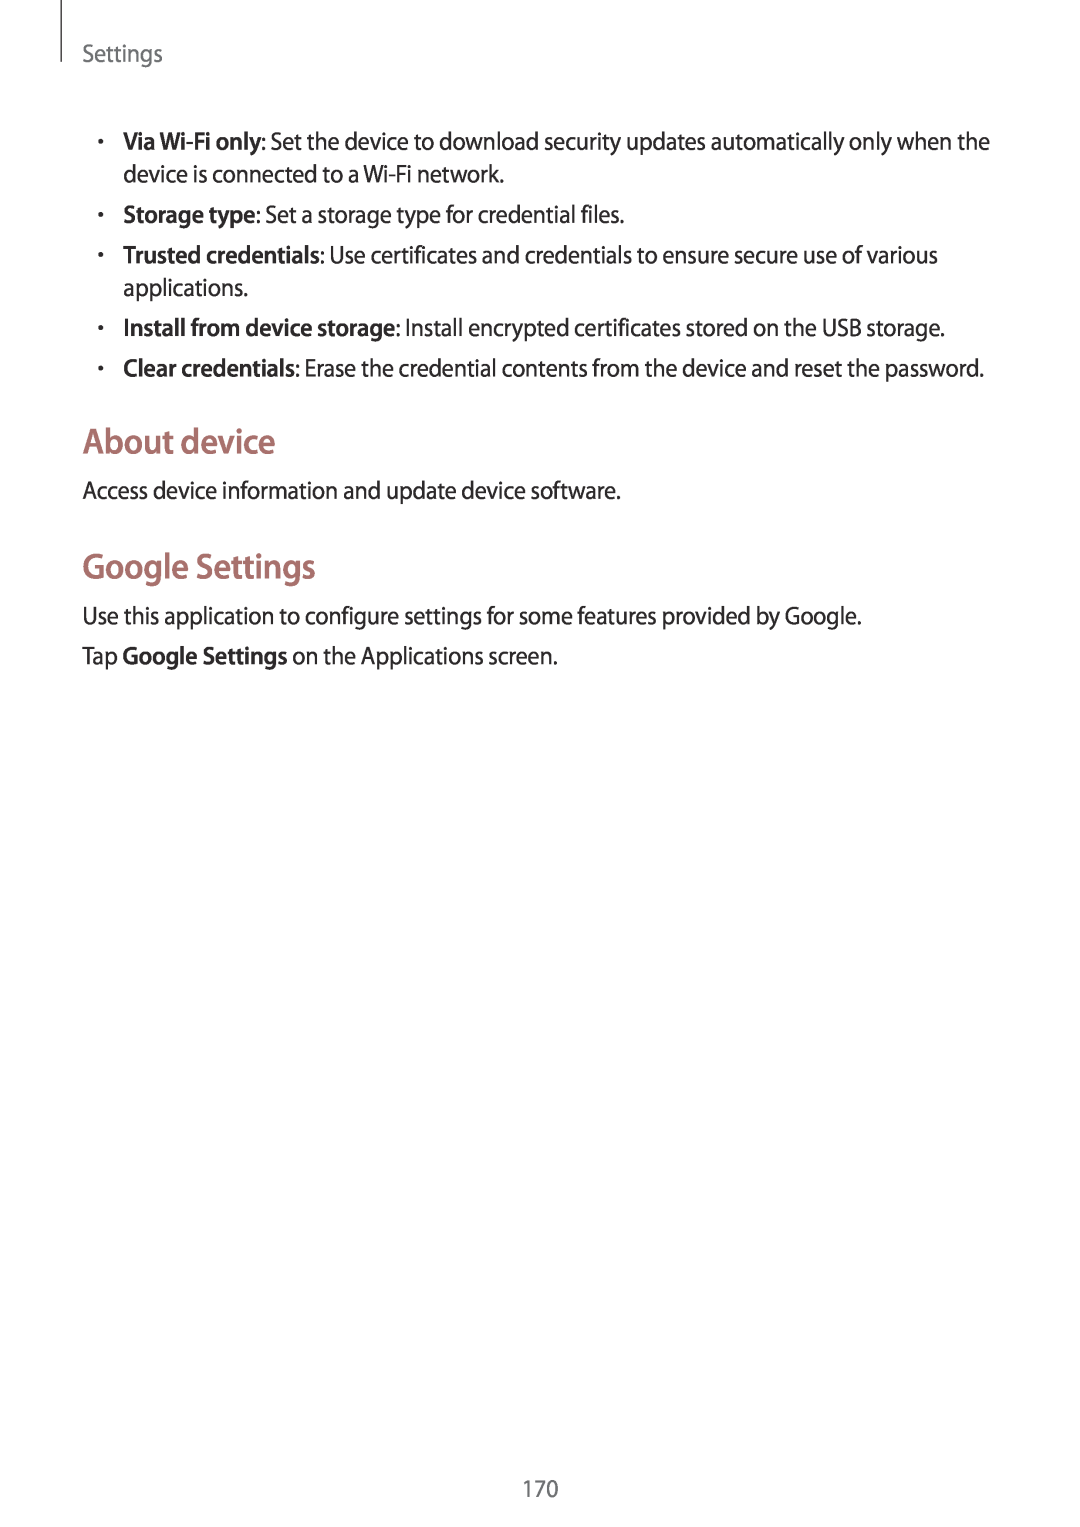 Samsung SM-N9005ZKEEGY, SM-N9005ZIEEGY, SM-N9005ZIEKSA, SM-N9005ZREAFR, SM-N9005WDEKSA manual About device, Google Settings 